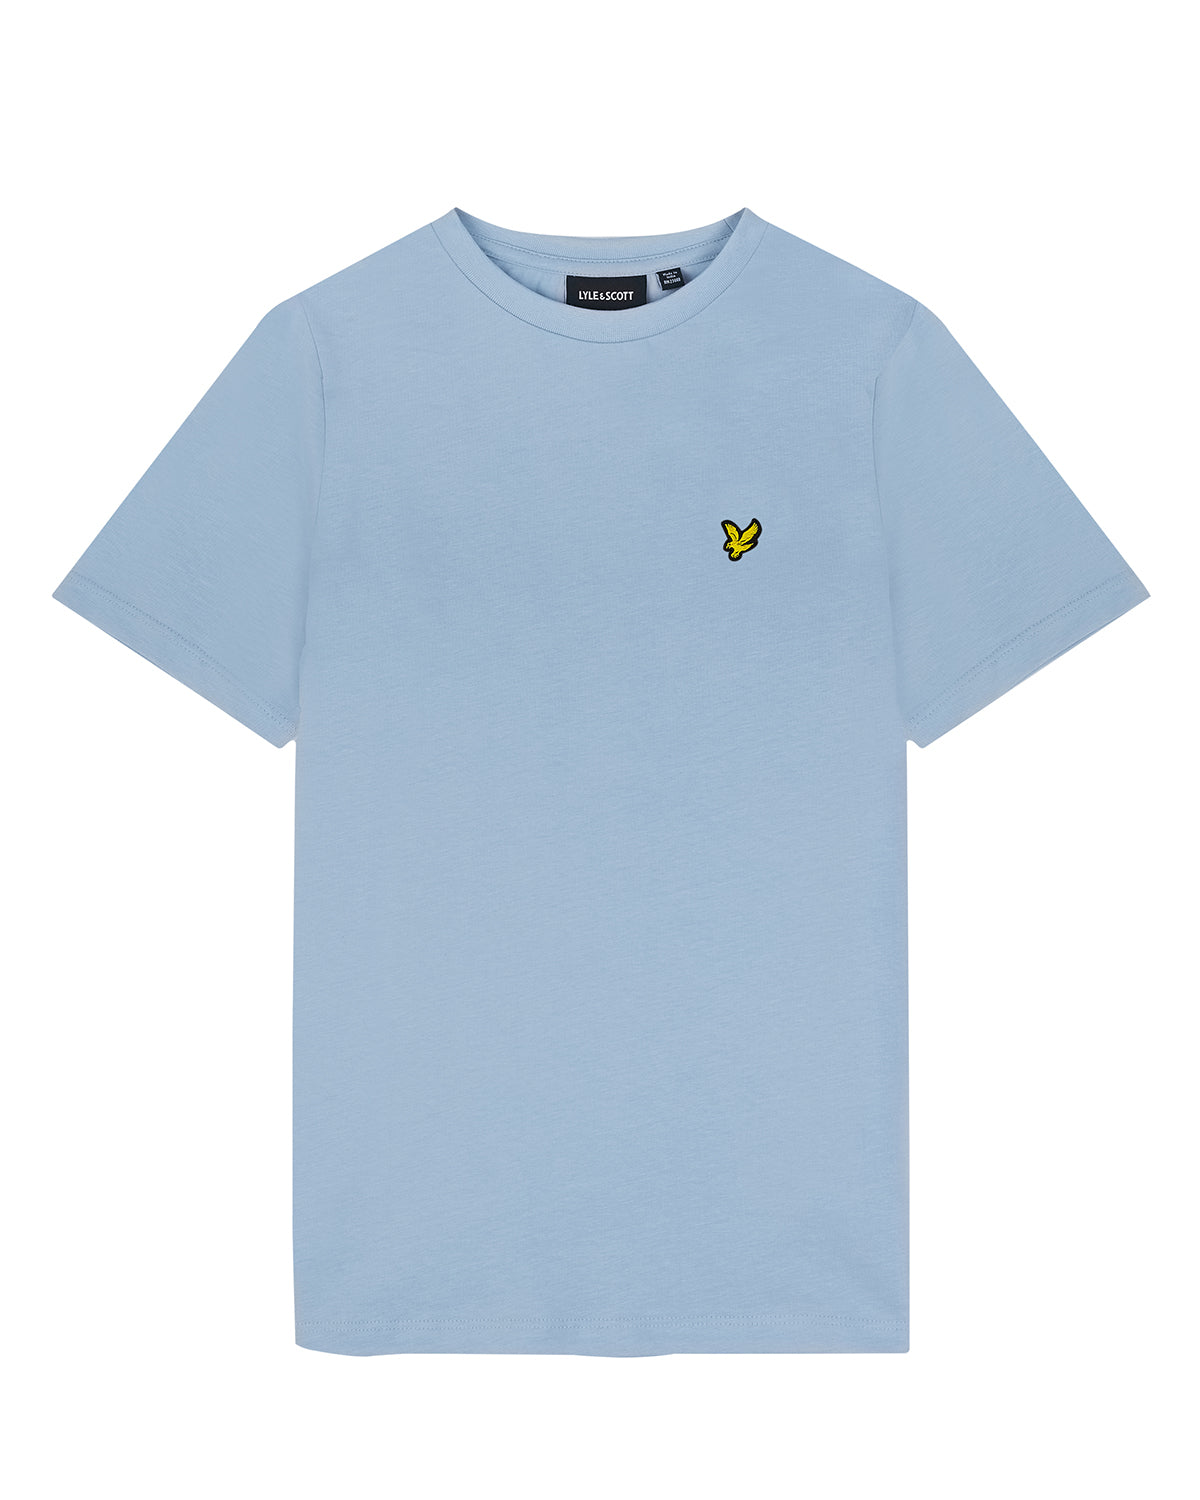 Jongens Plain T-shirt van Lyle & Scott in de kleur W487 Light Blue in maat 170-176.